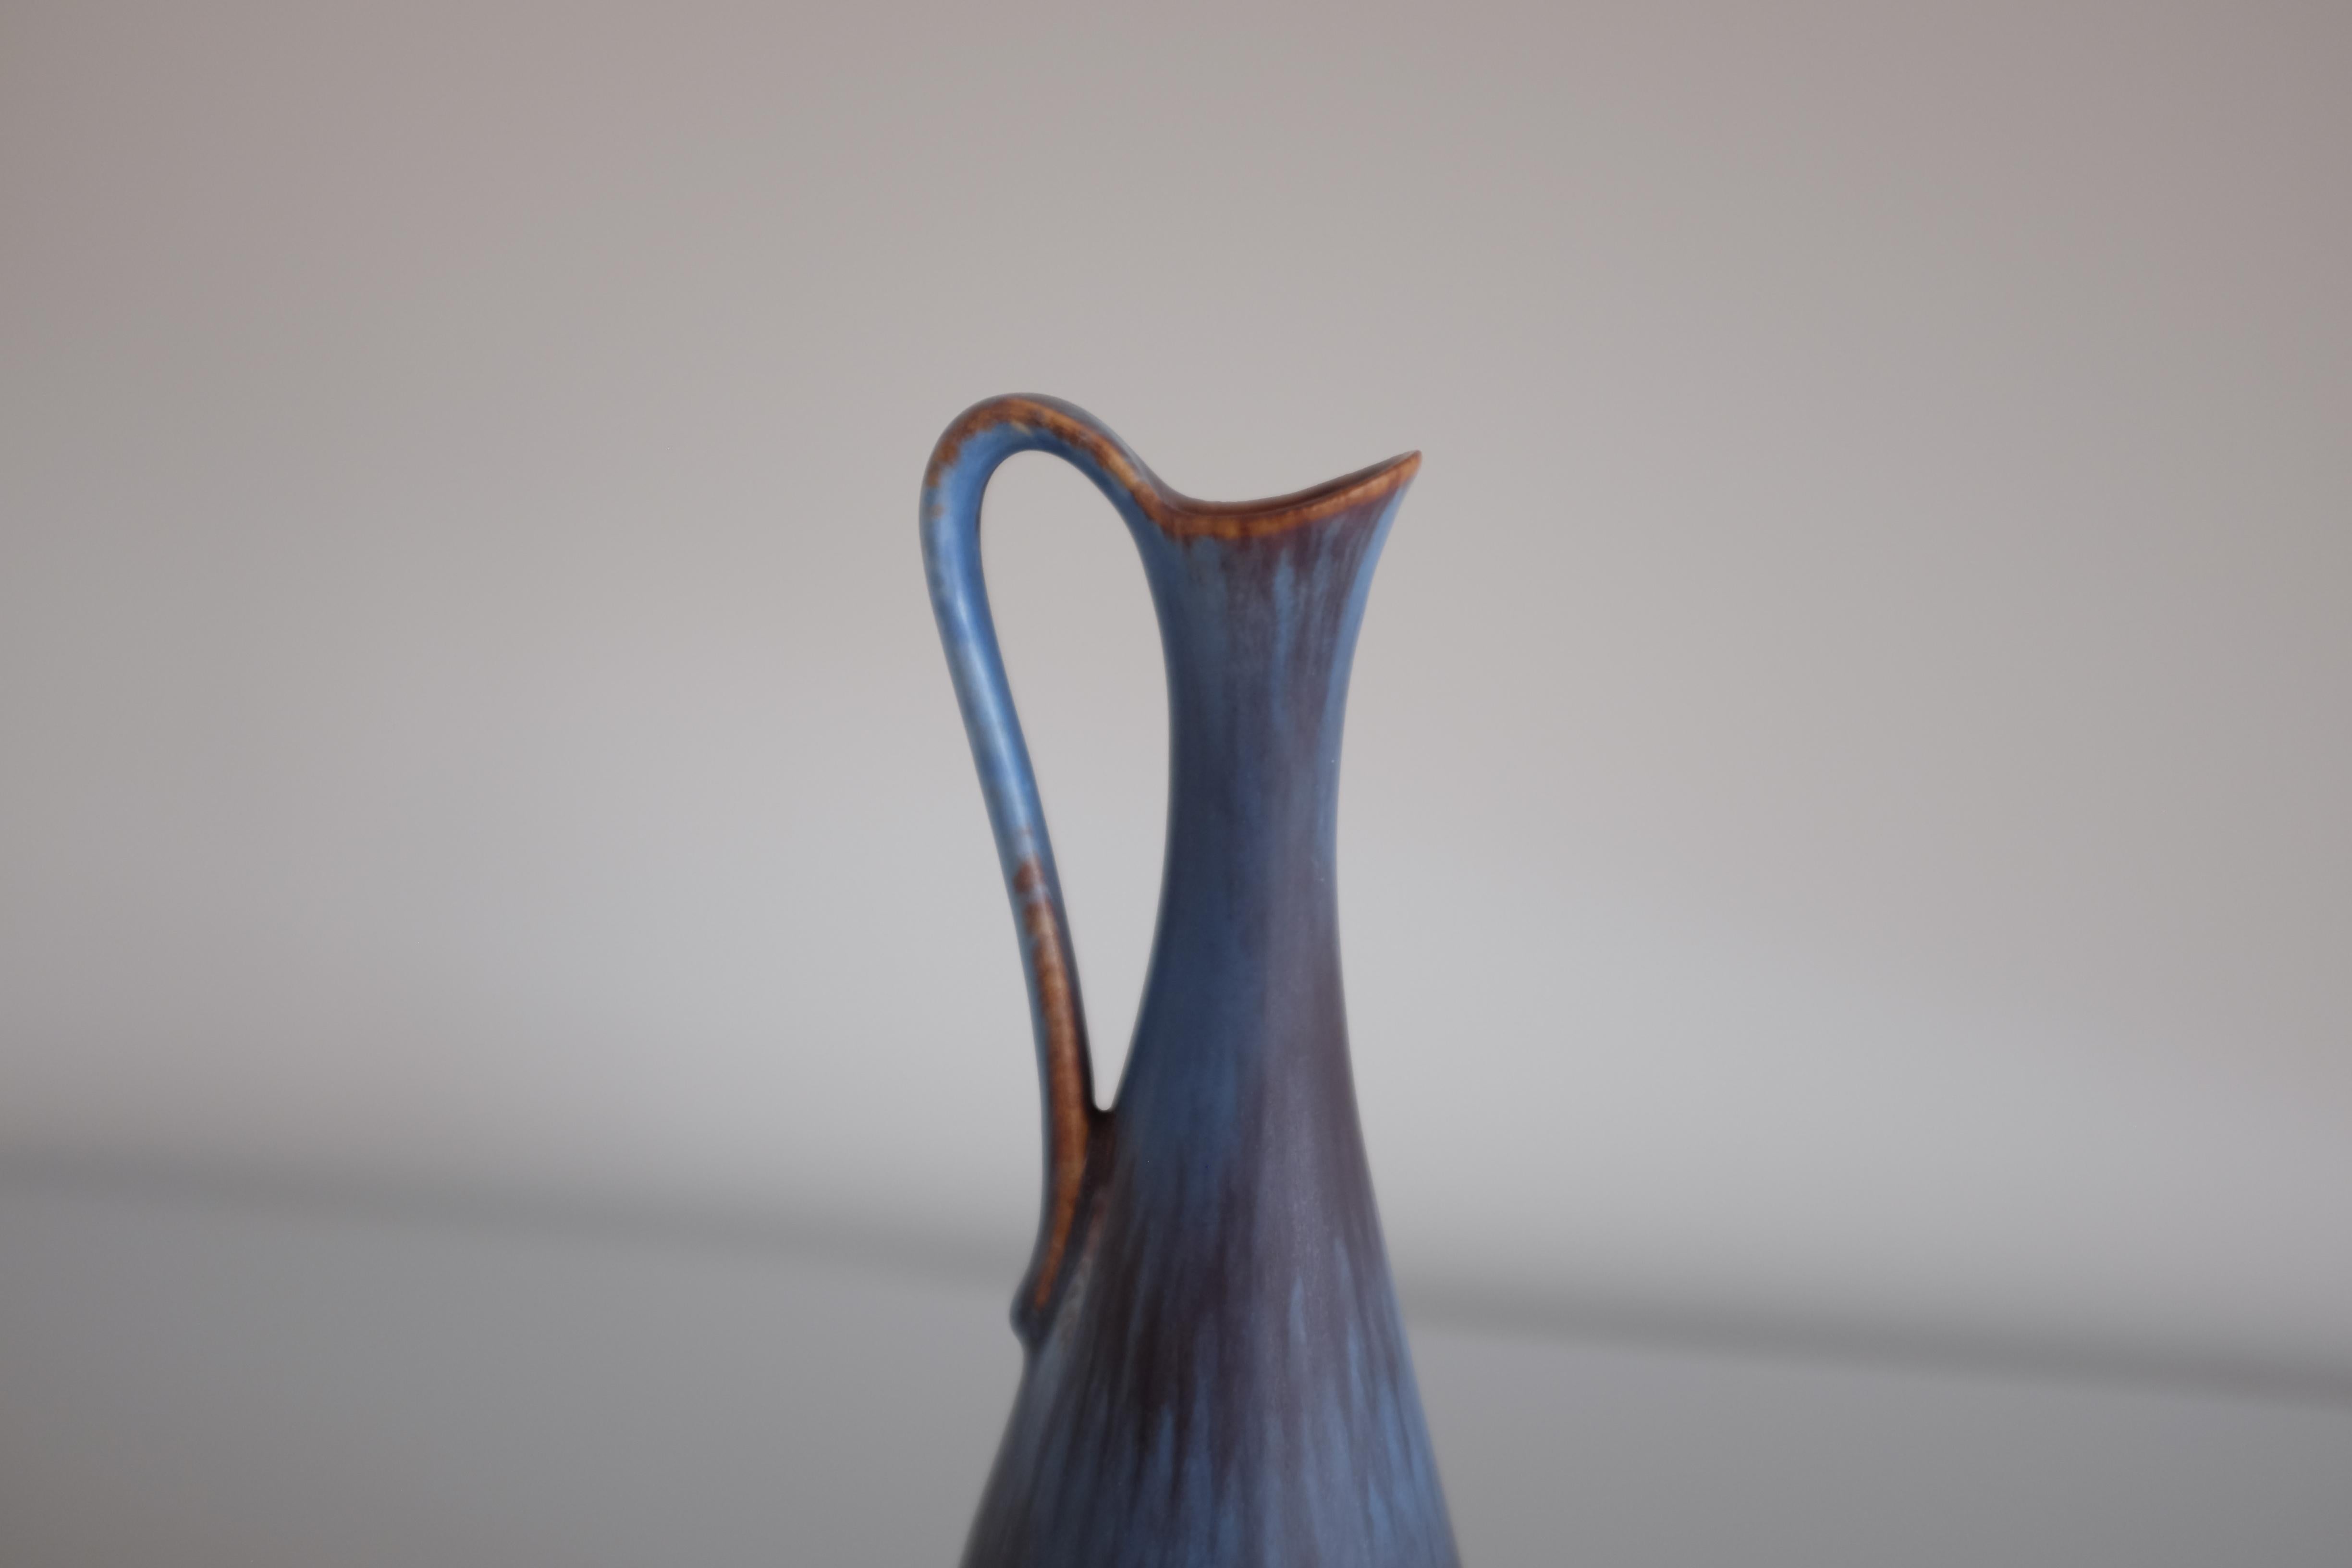 Vase en céramique des années 1950 modèle ARL par Gunnar Nylund pour Rörstrand, Suède. En bon état.

Dimensions : H 8 in. x W 3 in. x D 3 in.